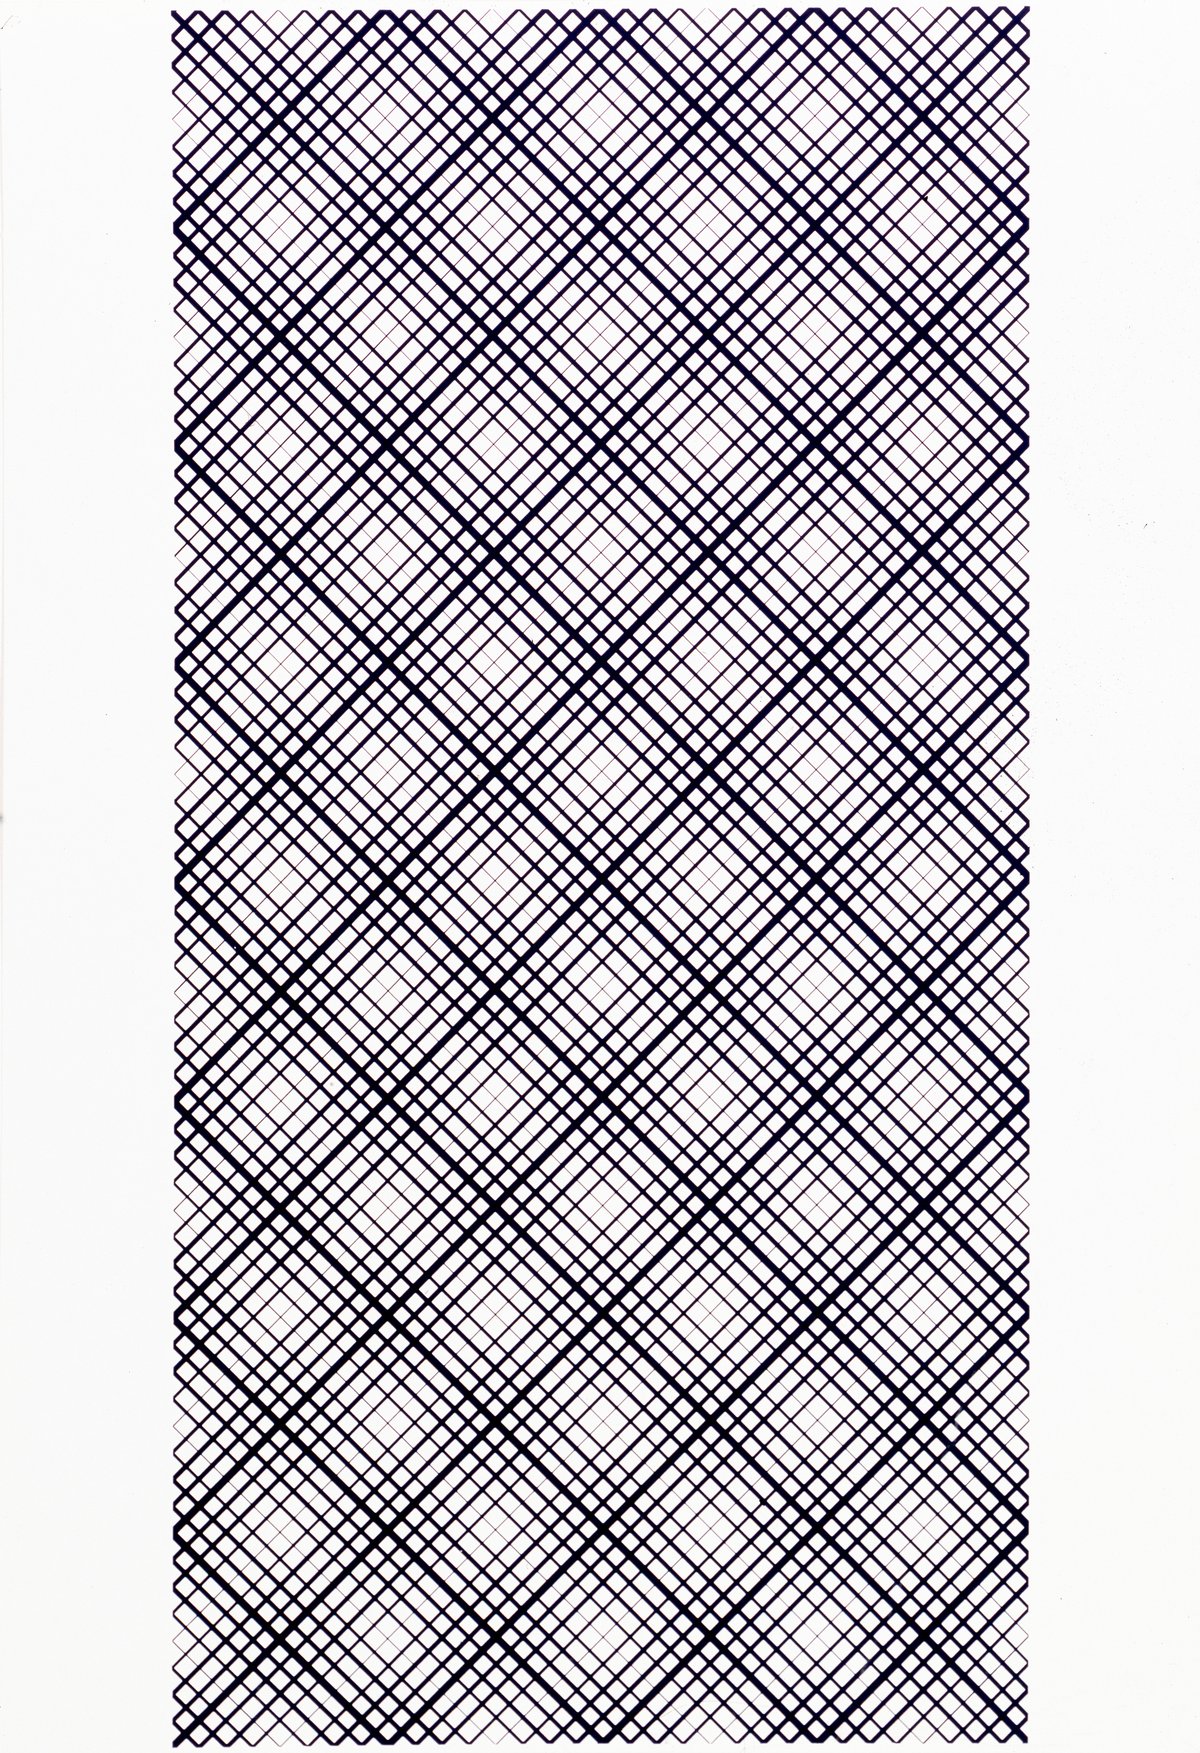 lev nusberg, &quot;kinetische zeichnung&quot; (1963–65), silkscreen on laid paper, 84 x 60 cm